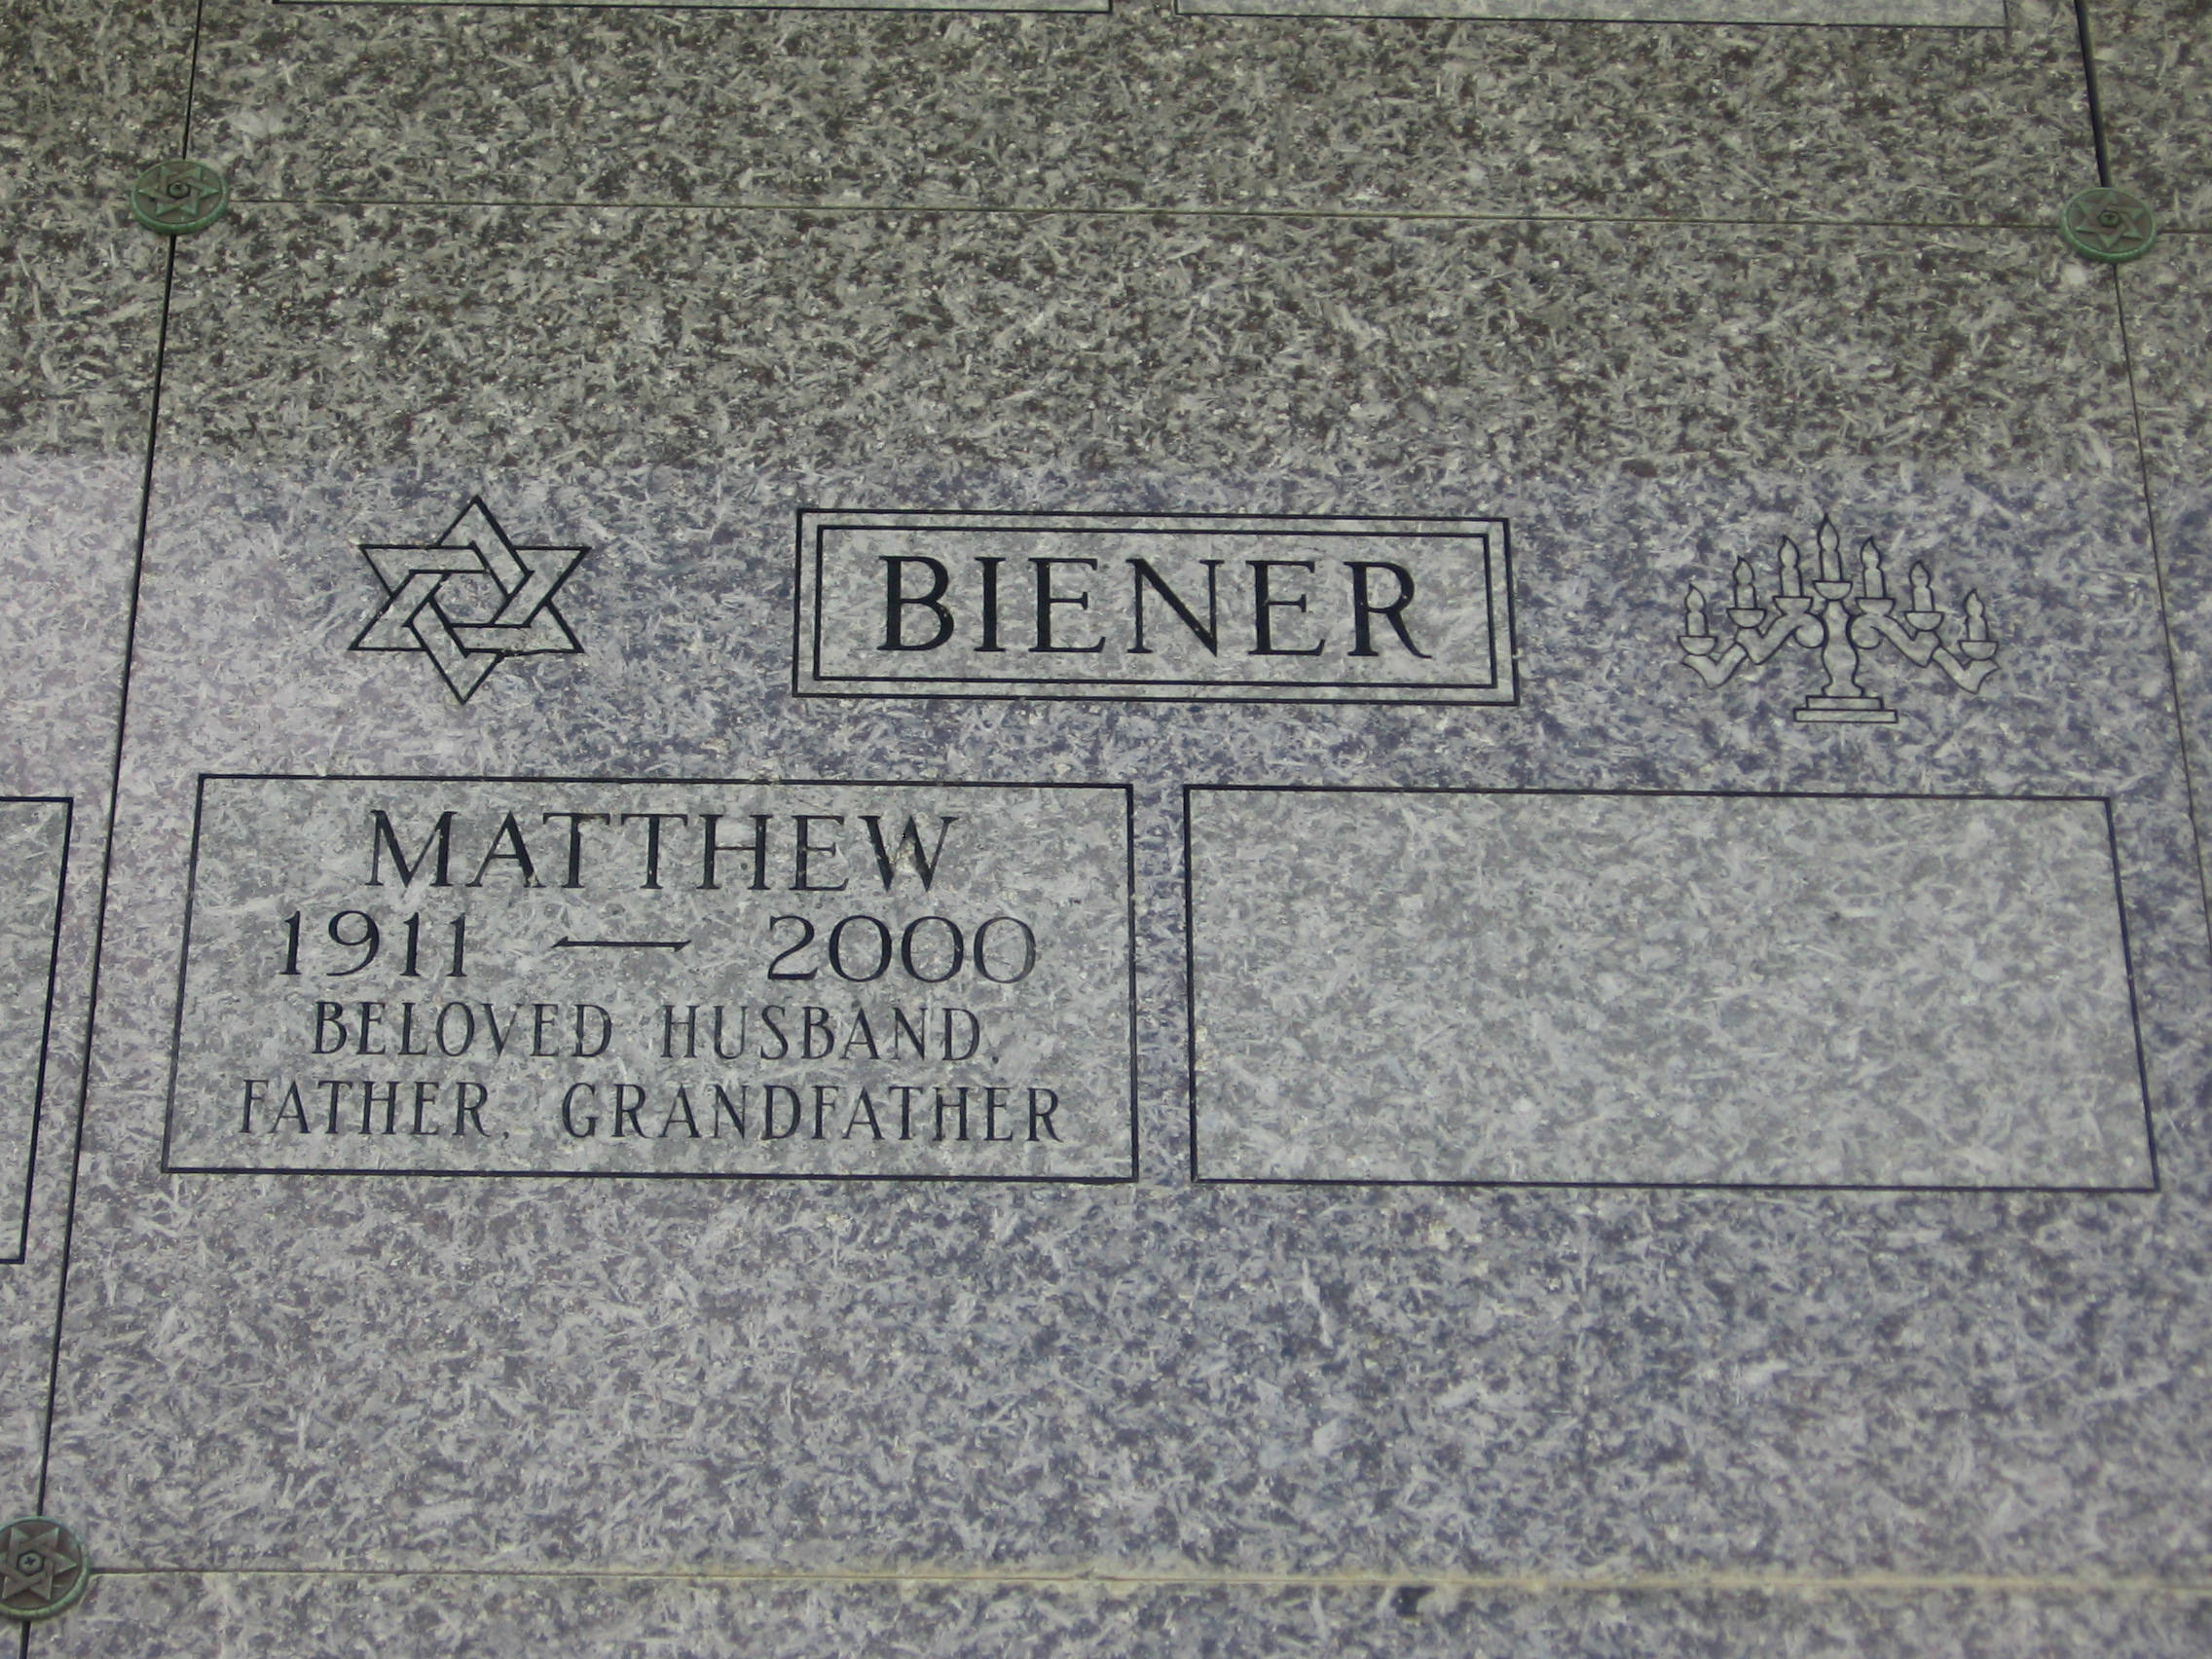 Matthew Biener